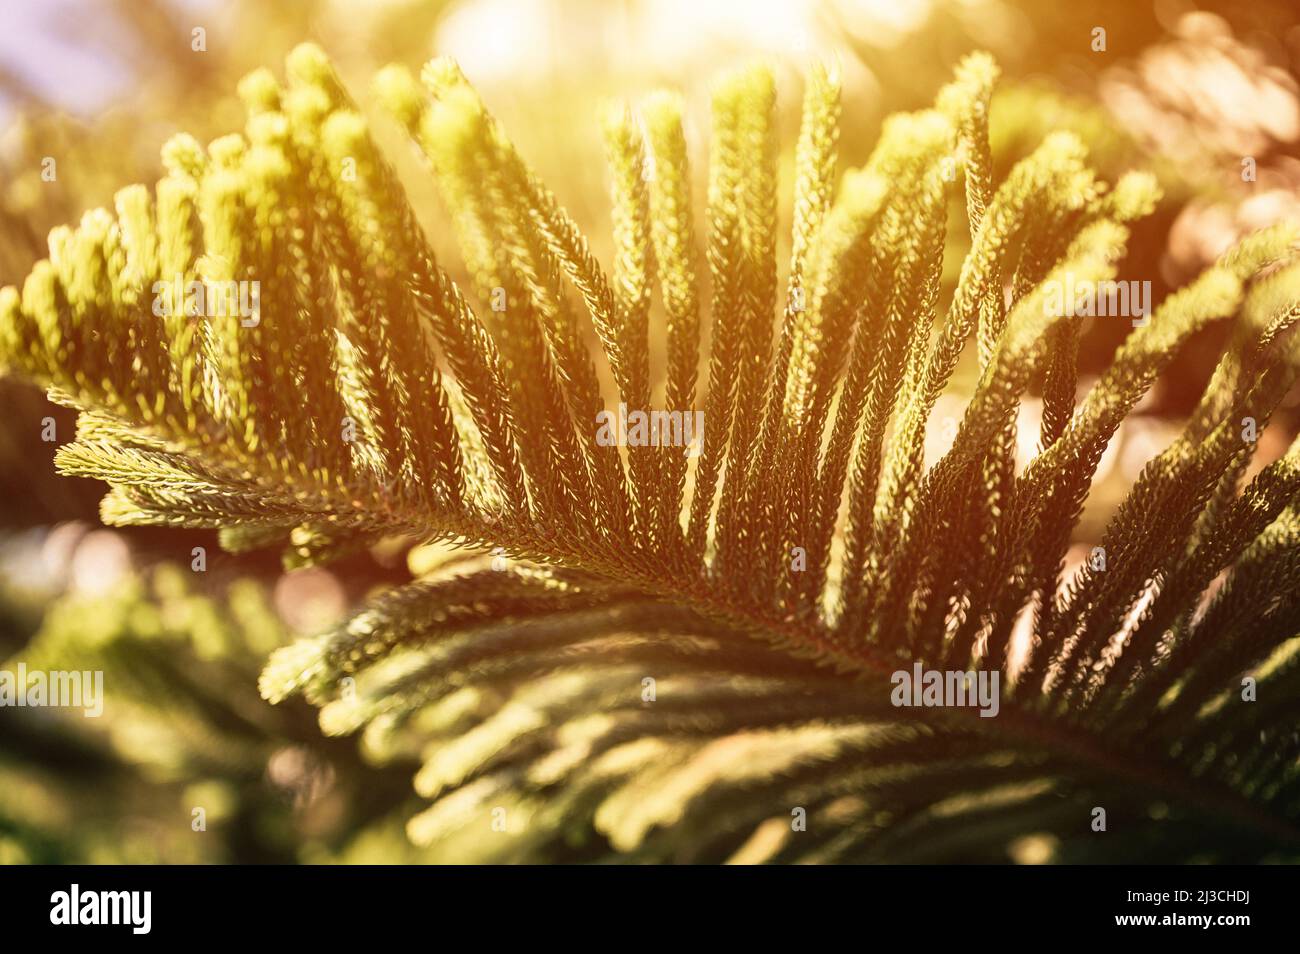 araucaria heterophylla rama o casa pino o isla norfolk pino perenne árbol coníferas planta decorativa en el jardín natural en verano día soleado. d Foto de stock